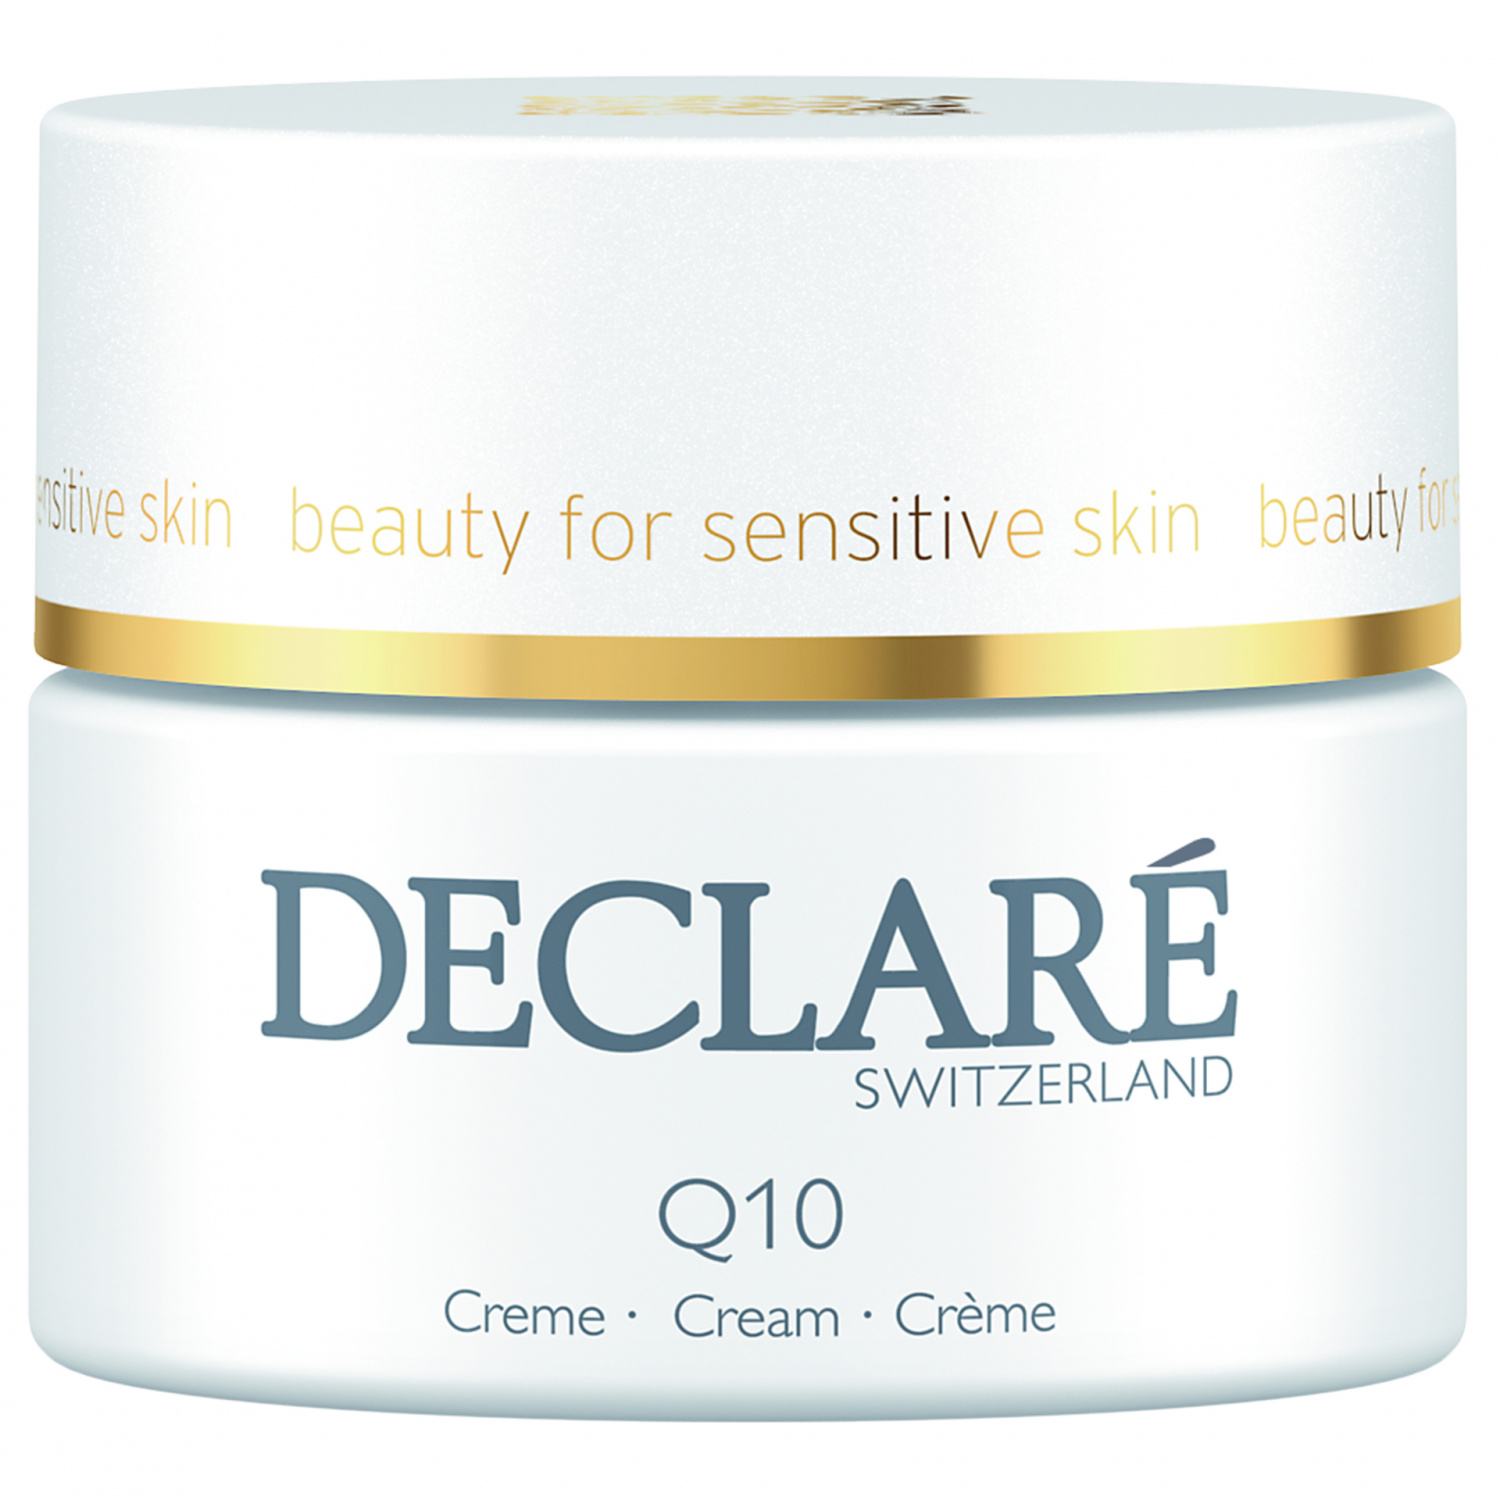 Declare Q10 Age Control Cream 50ml - интернет-магазин профессиональной косметики Spadream, изображение 30754